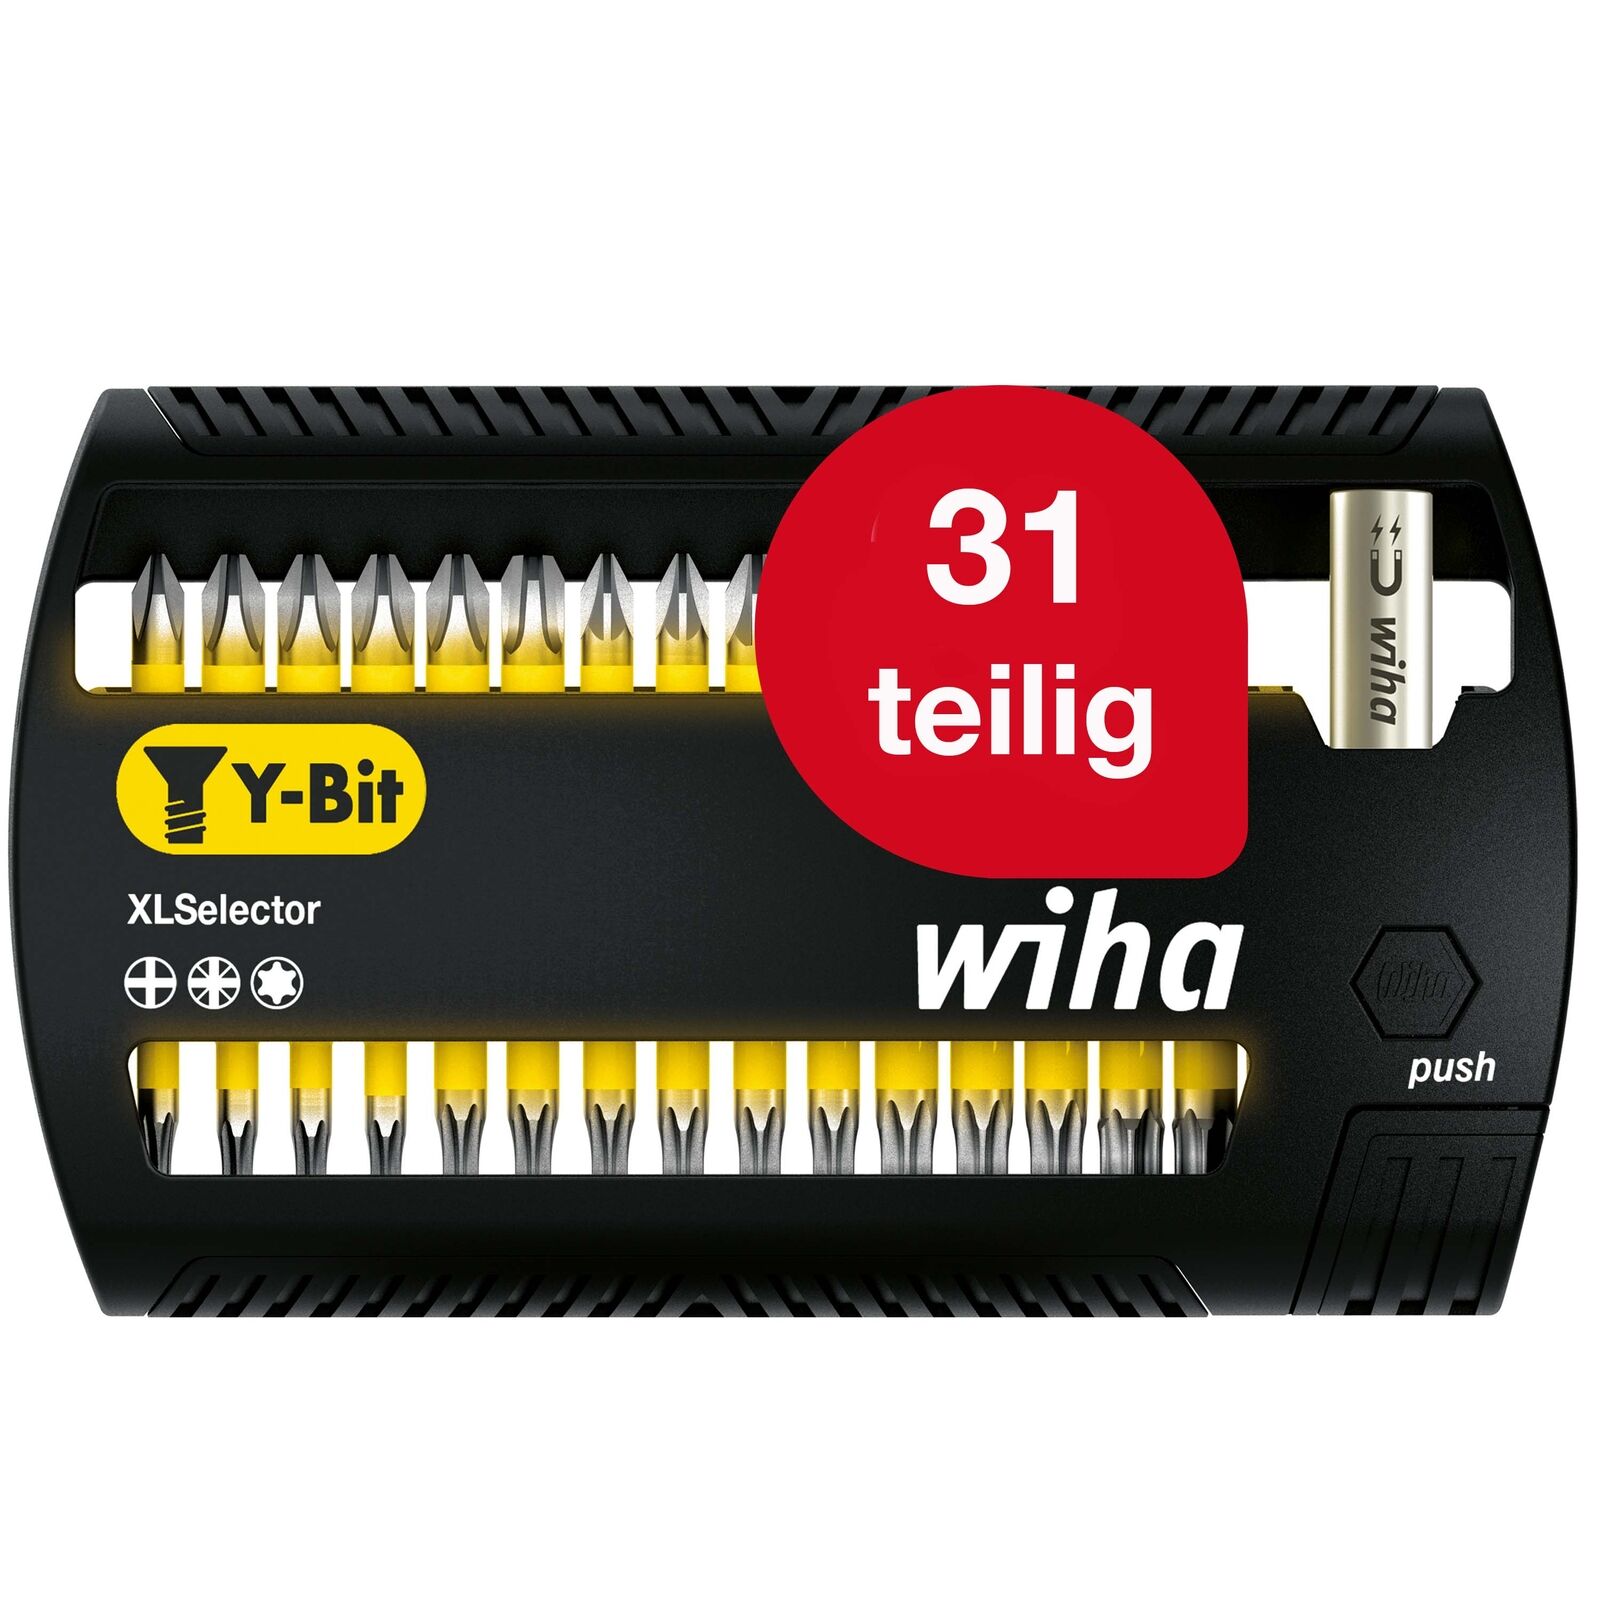 Wiha Bit Set XLSelector Y-Bit 32tlg 25mm PH PZ TORX 14 magnetischer Bithalter